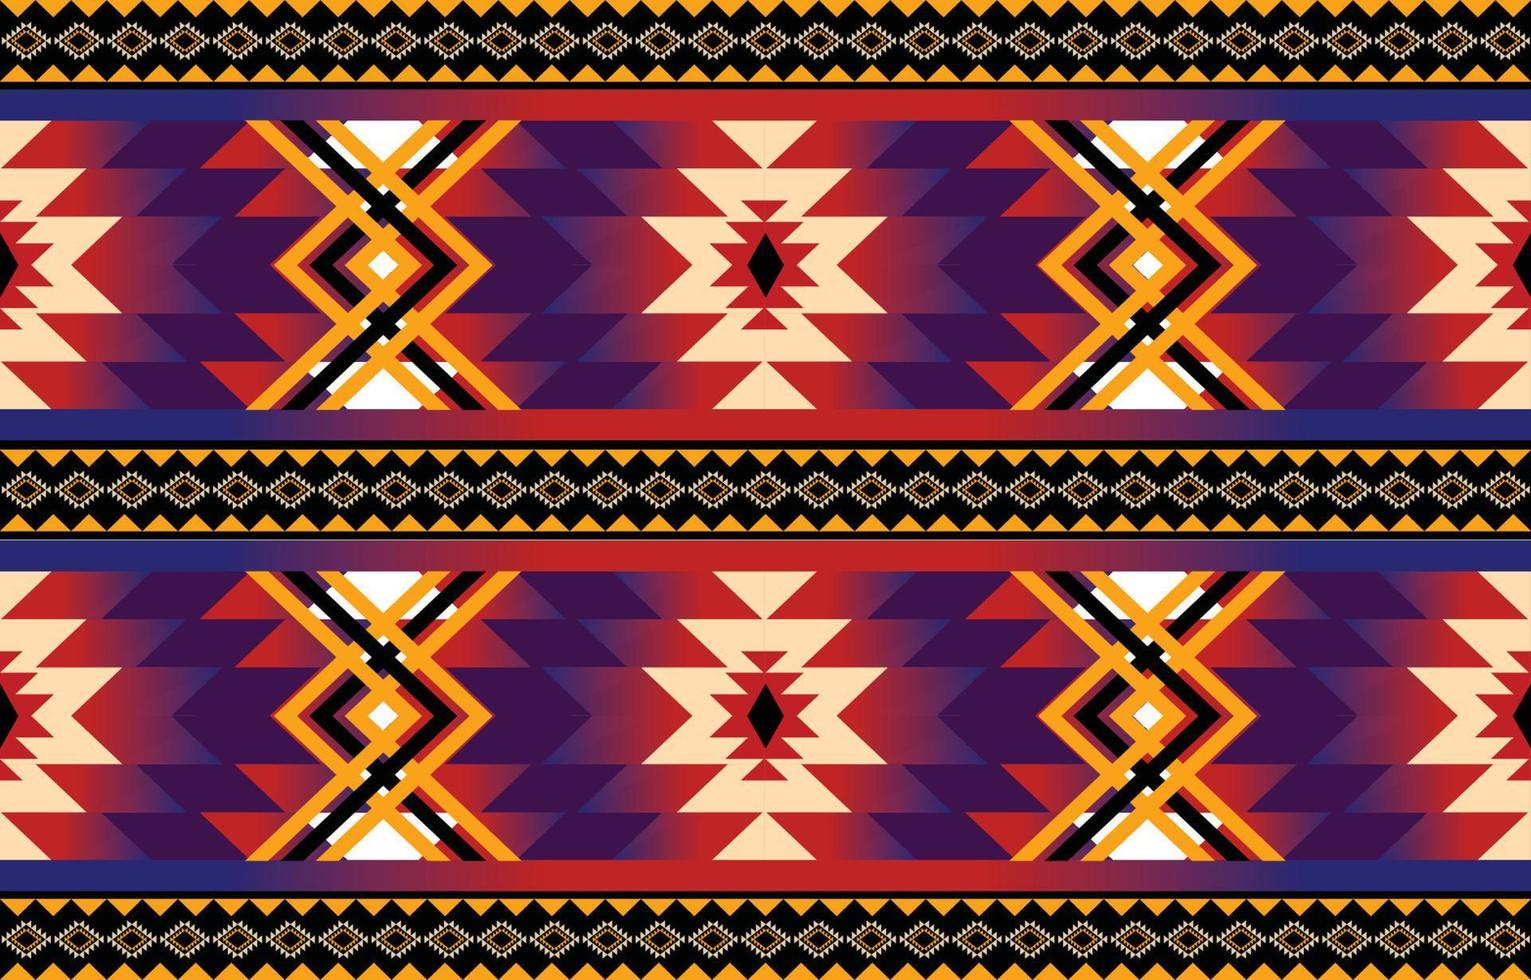 vecteur de motif géométrique ethnique. motif aztèque indigène afro-américain mexicain indonésie et éléments de motif bohème. conçu pour le fond, le papier peint, l'impression, l'emballage, la tuile, le motif aztèque batik.vector